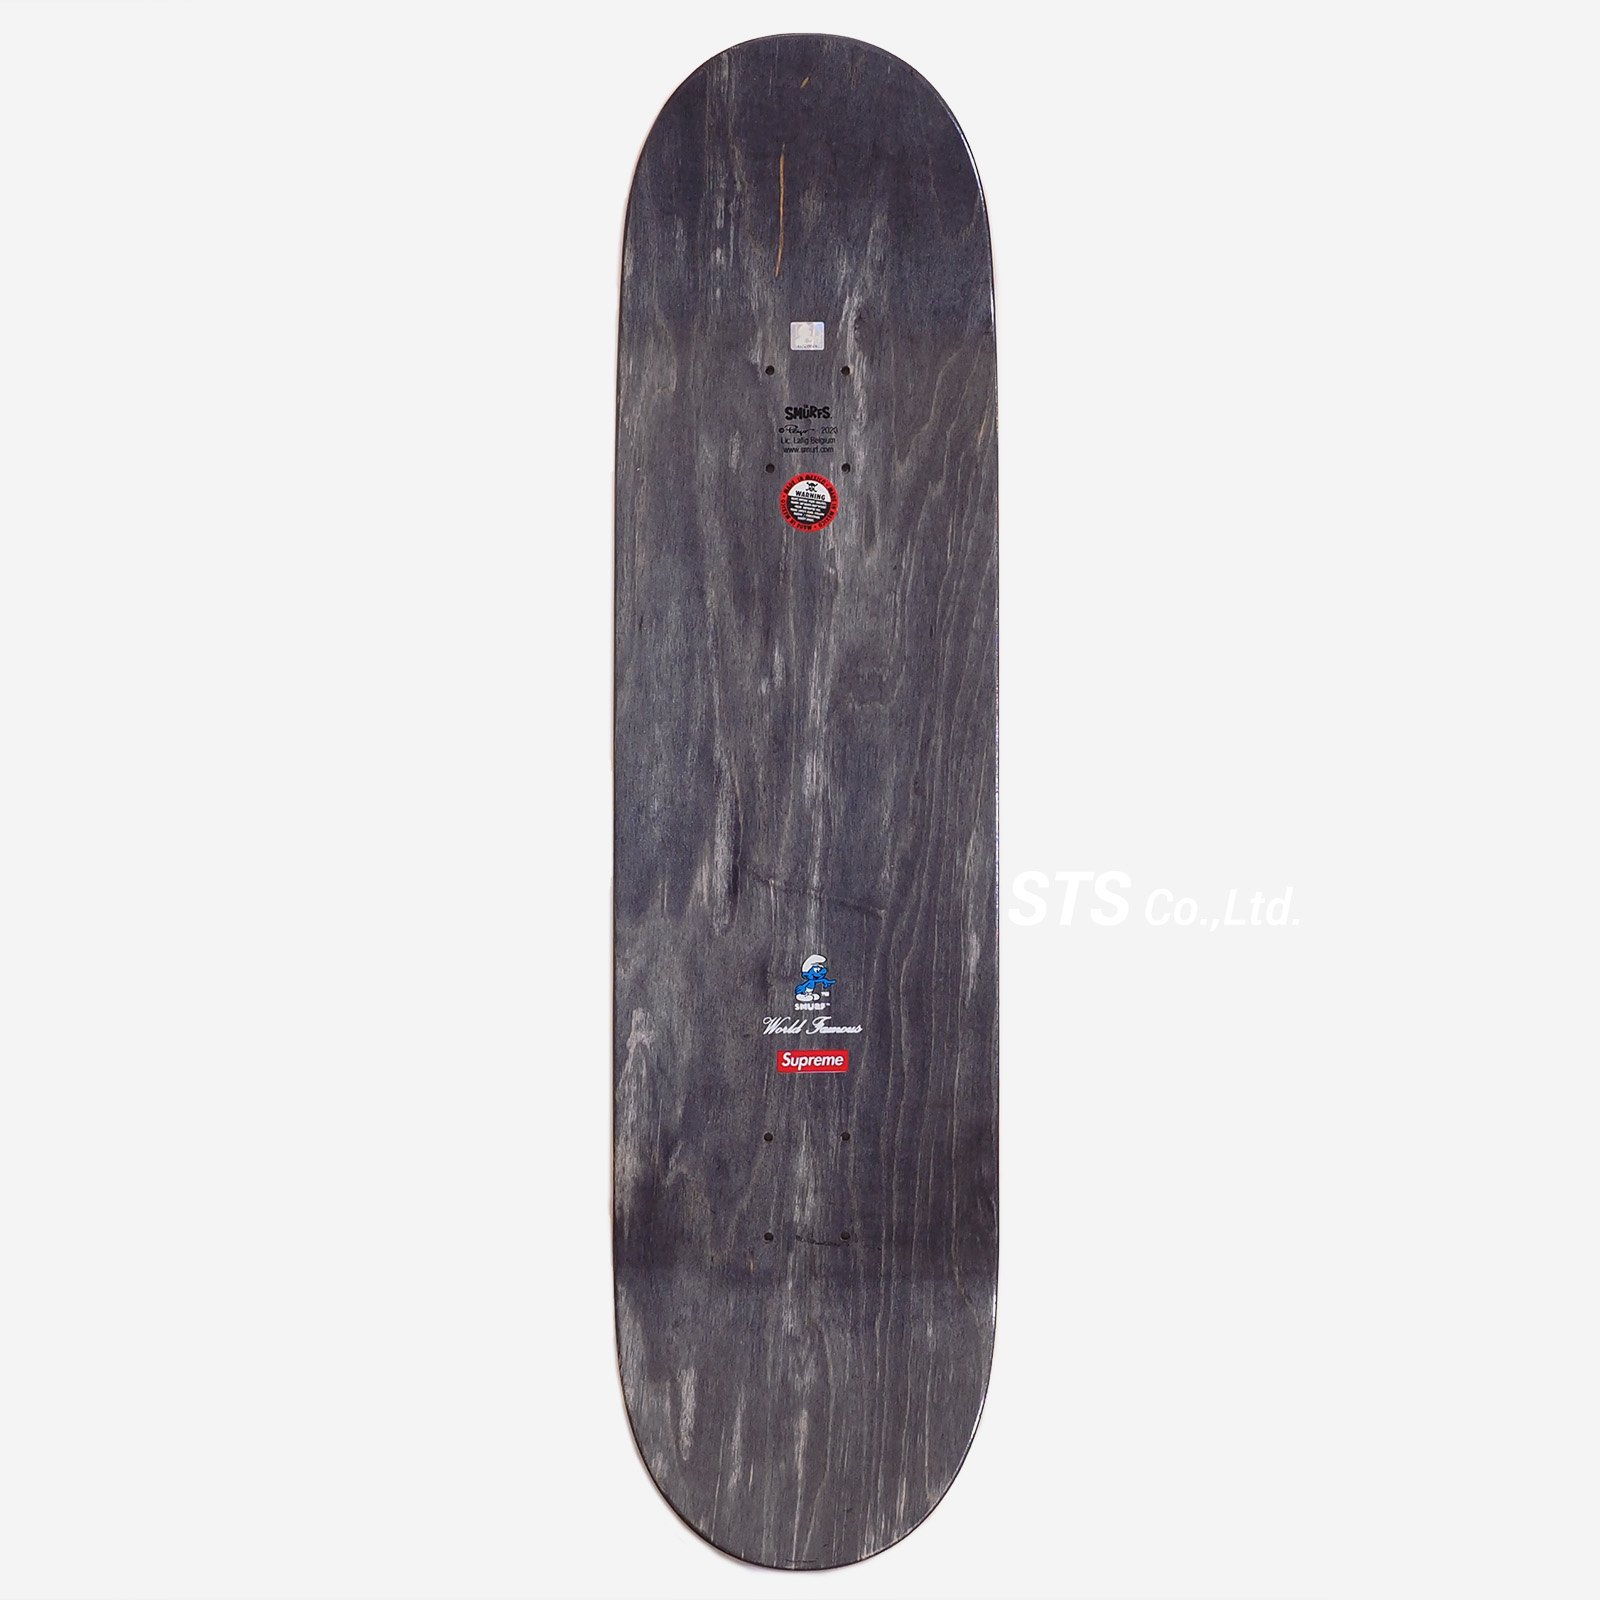 Supreme - Smurfs Skateboard - UG.SHAFT